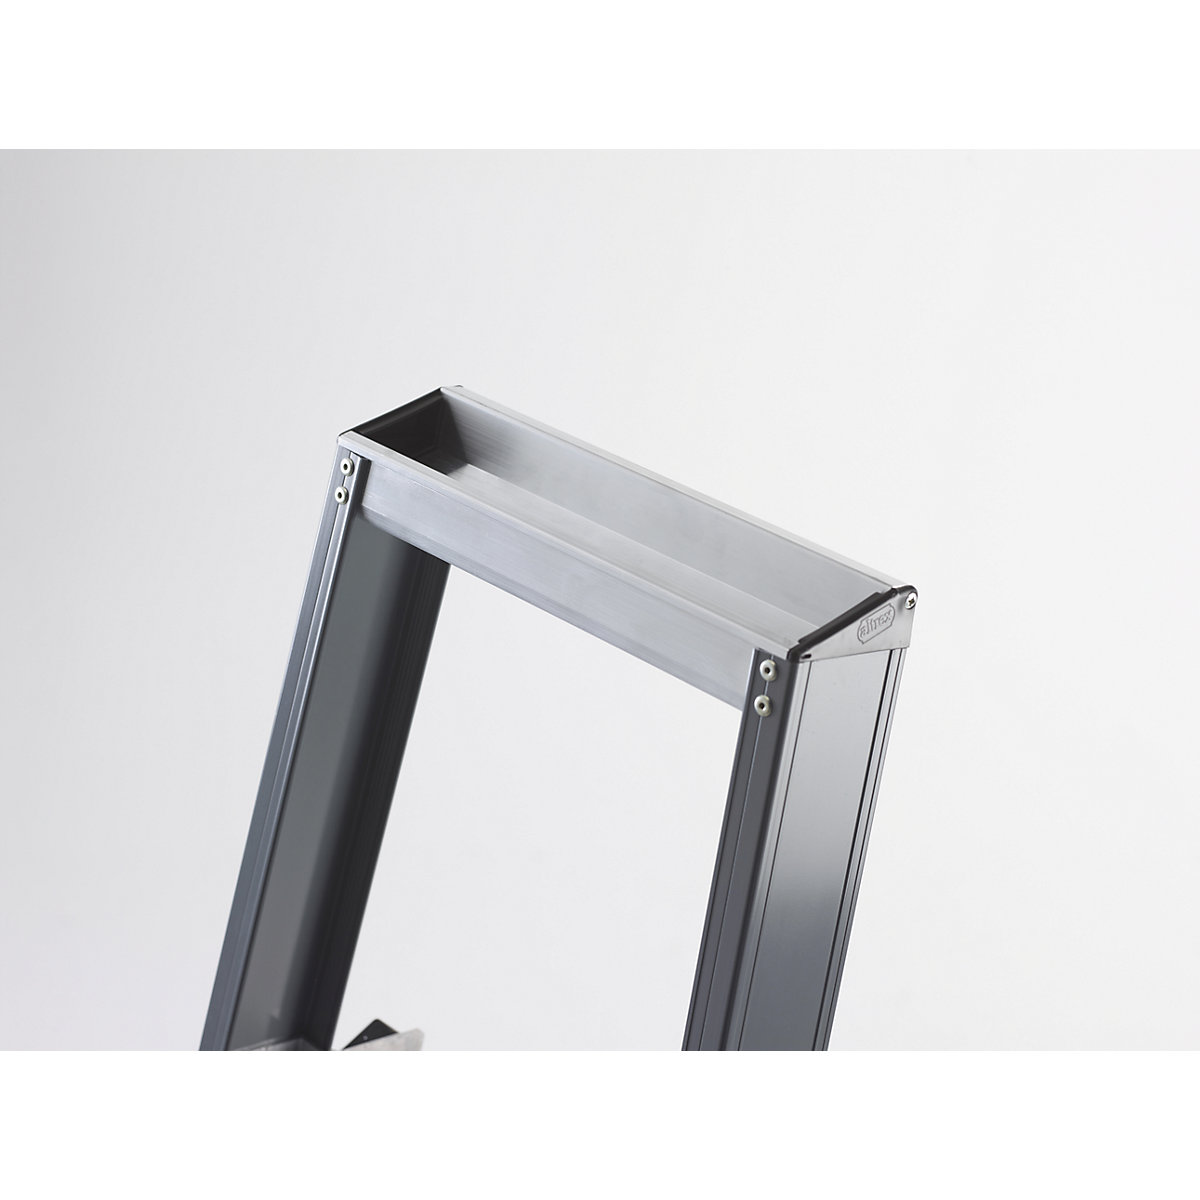 Escalera tipo tijera de peldaños planos de aluminio, de ascenso por un lado – Altrex (Imagen del producto 2)-1